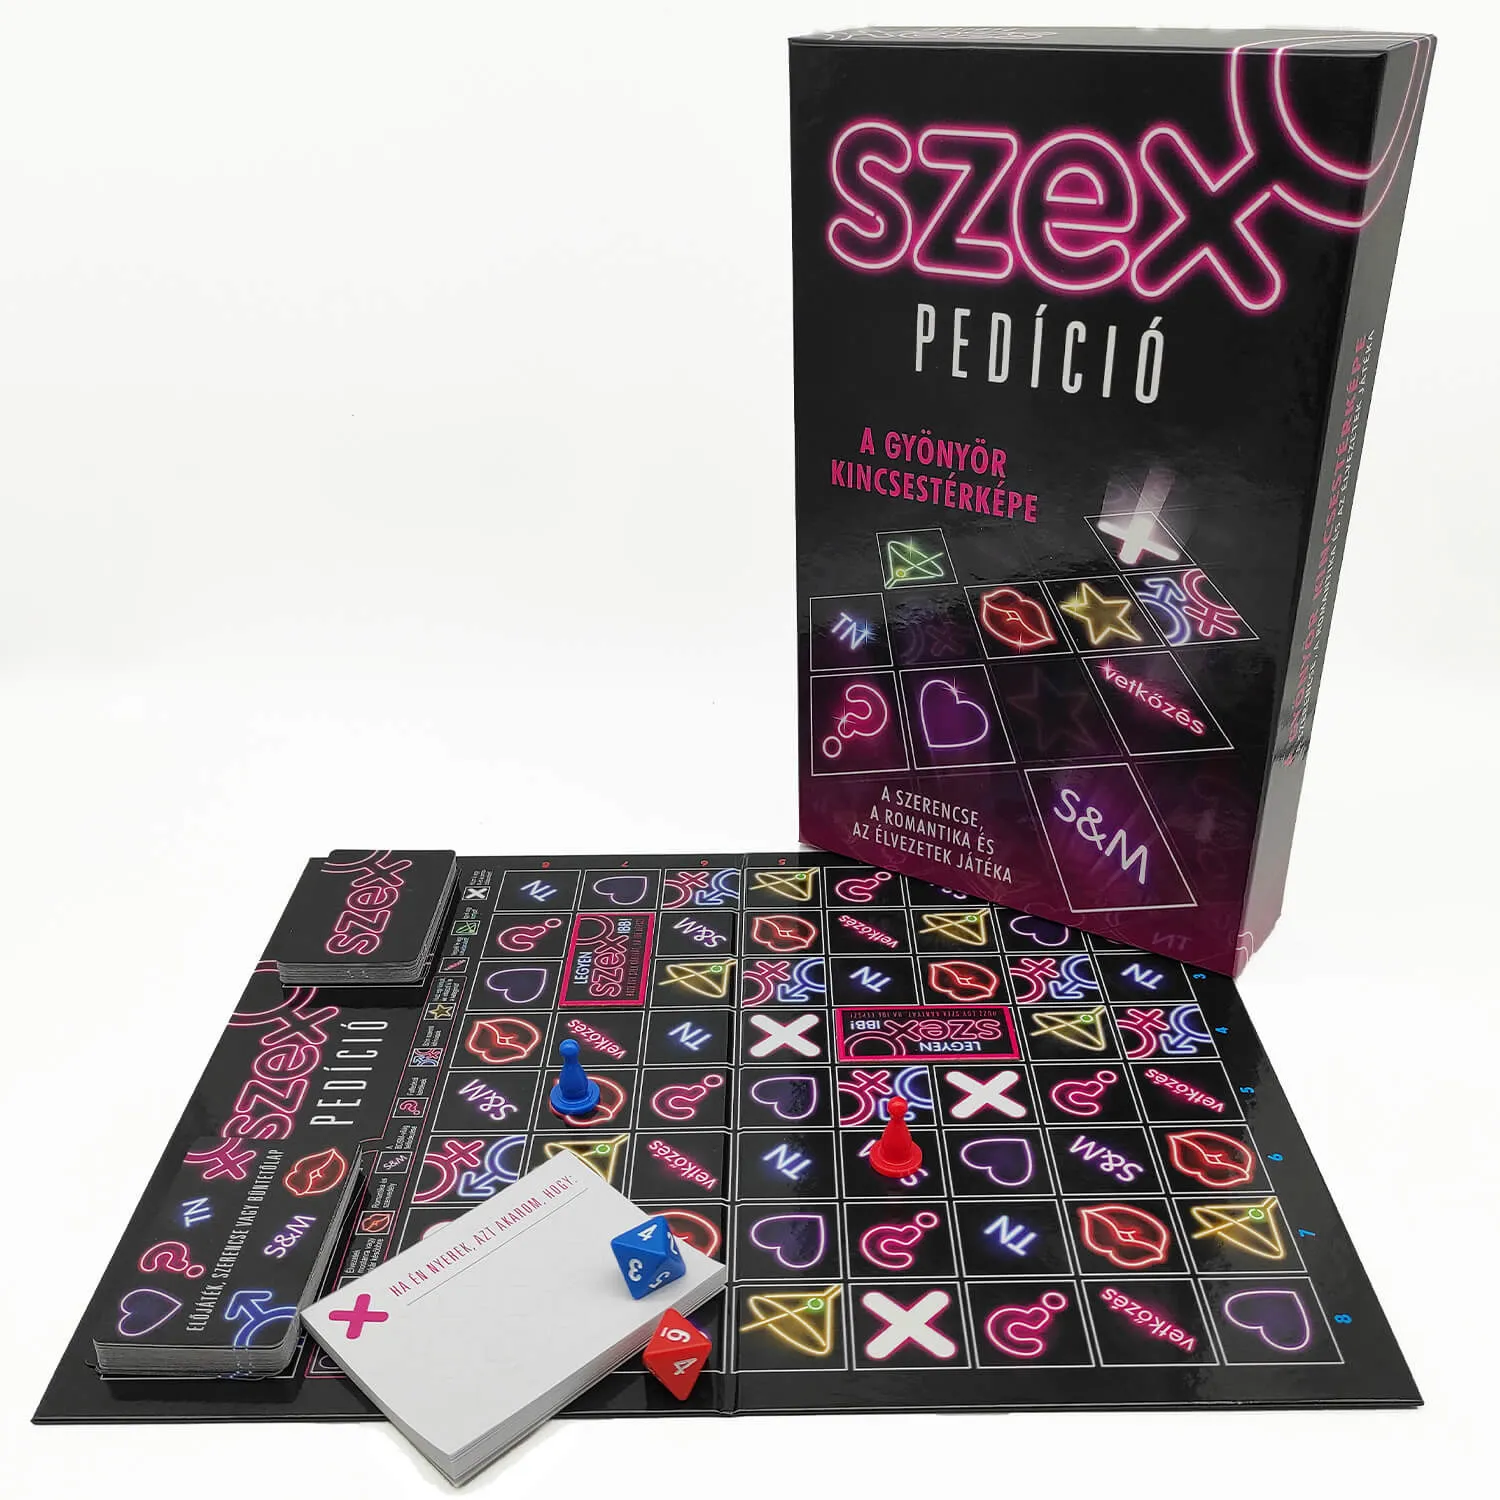 Sexpedice - společenská hra pro dospělé v maďarském jazyce